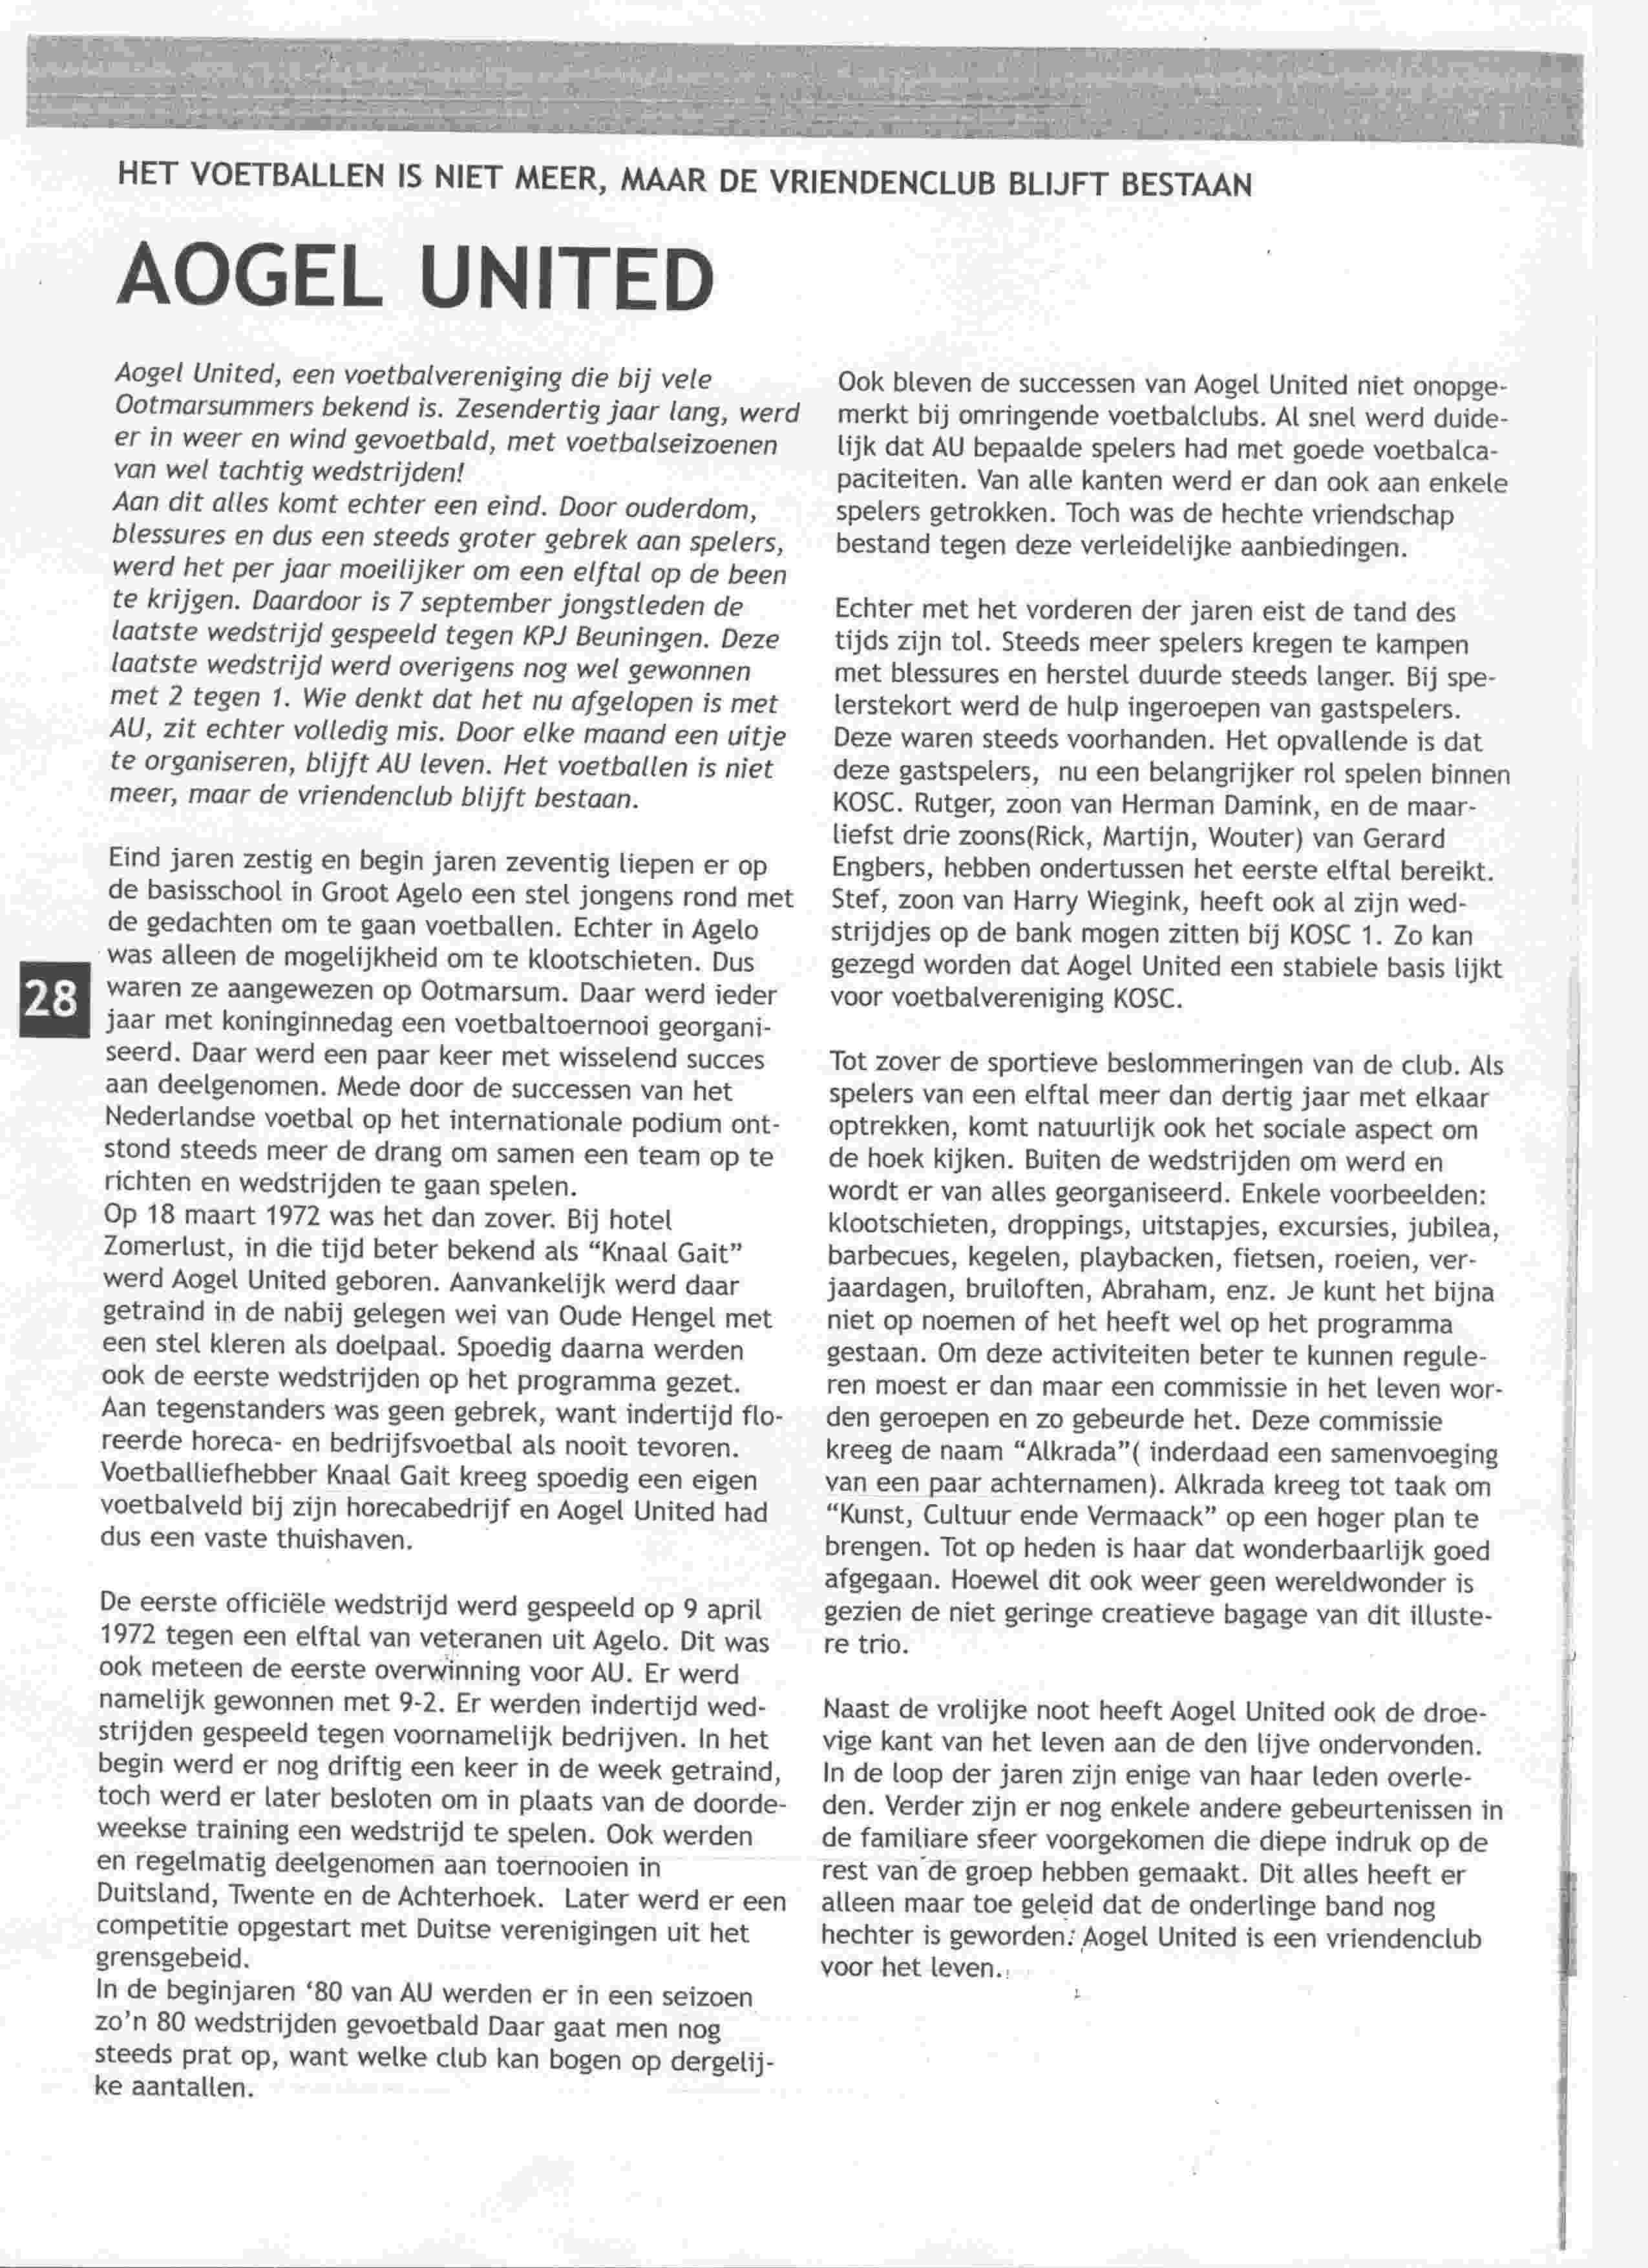 Artikel over Aogel United in KOSC-proat op 2009-01-01